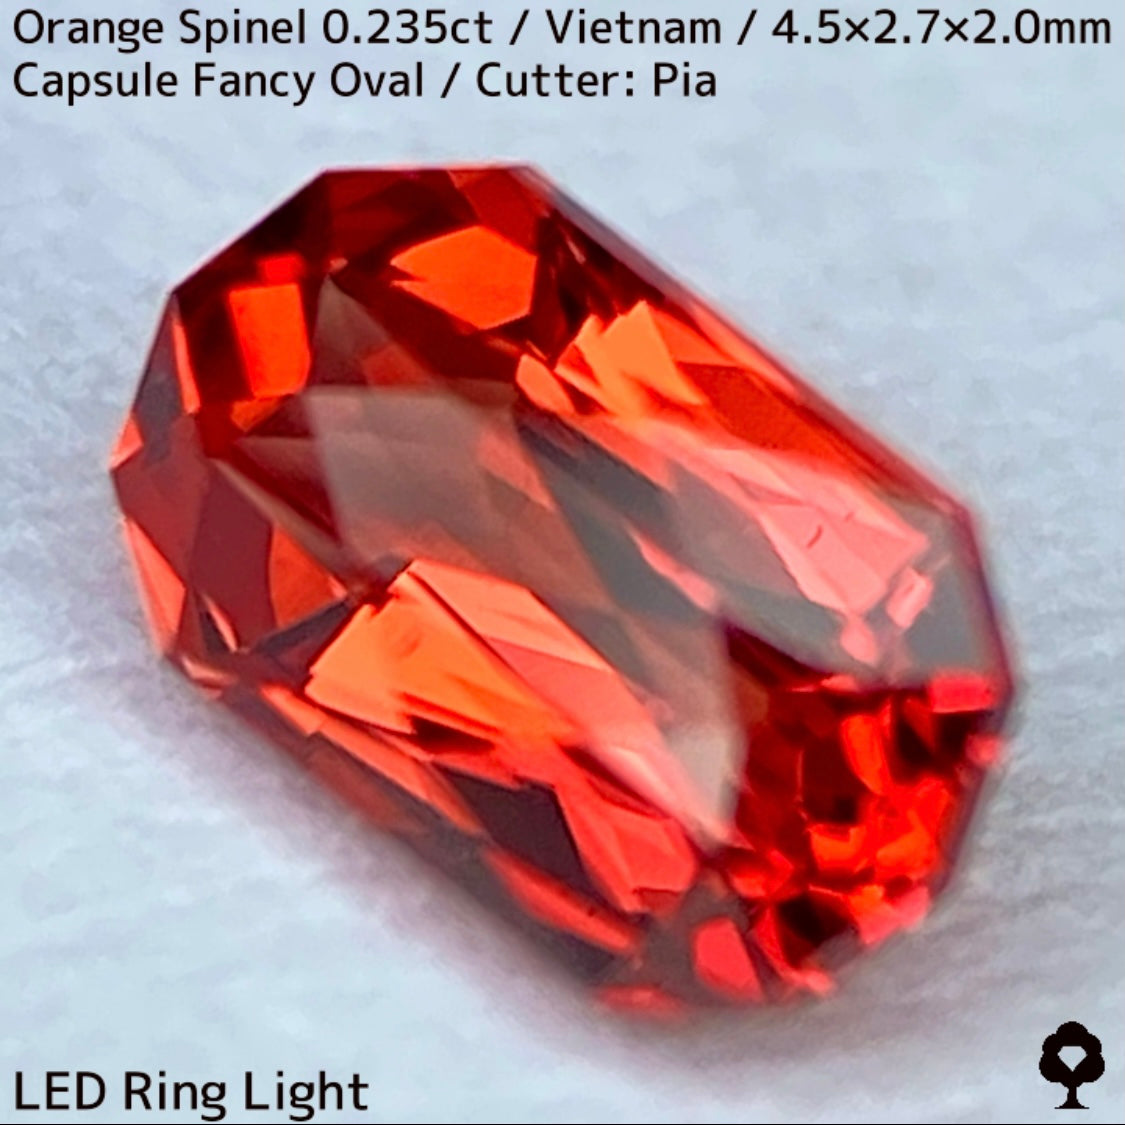 ベトナム産オレンジスピネル0.235ct★超美結晶のカプセルシザースから強烈オレンジネオンの煌めき